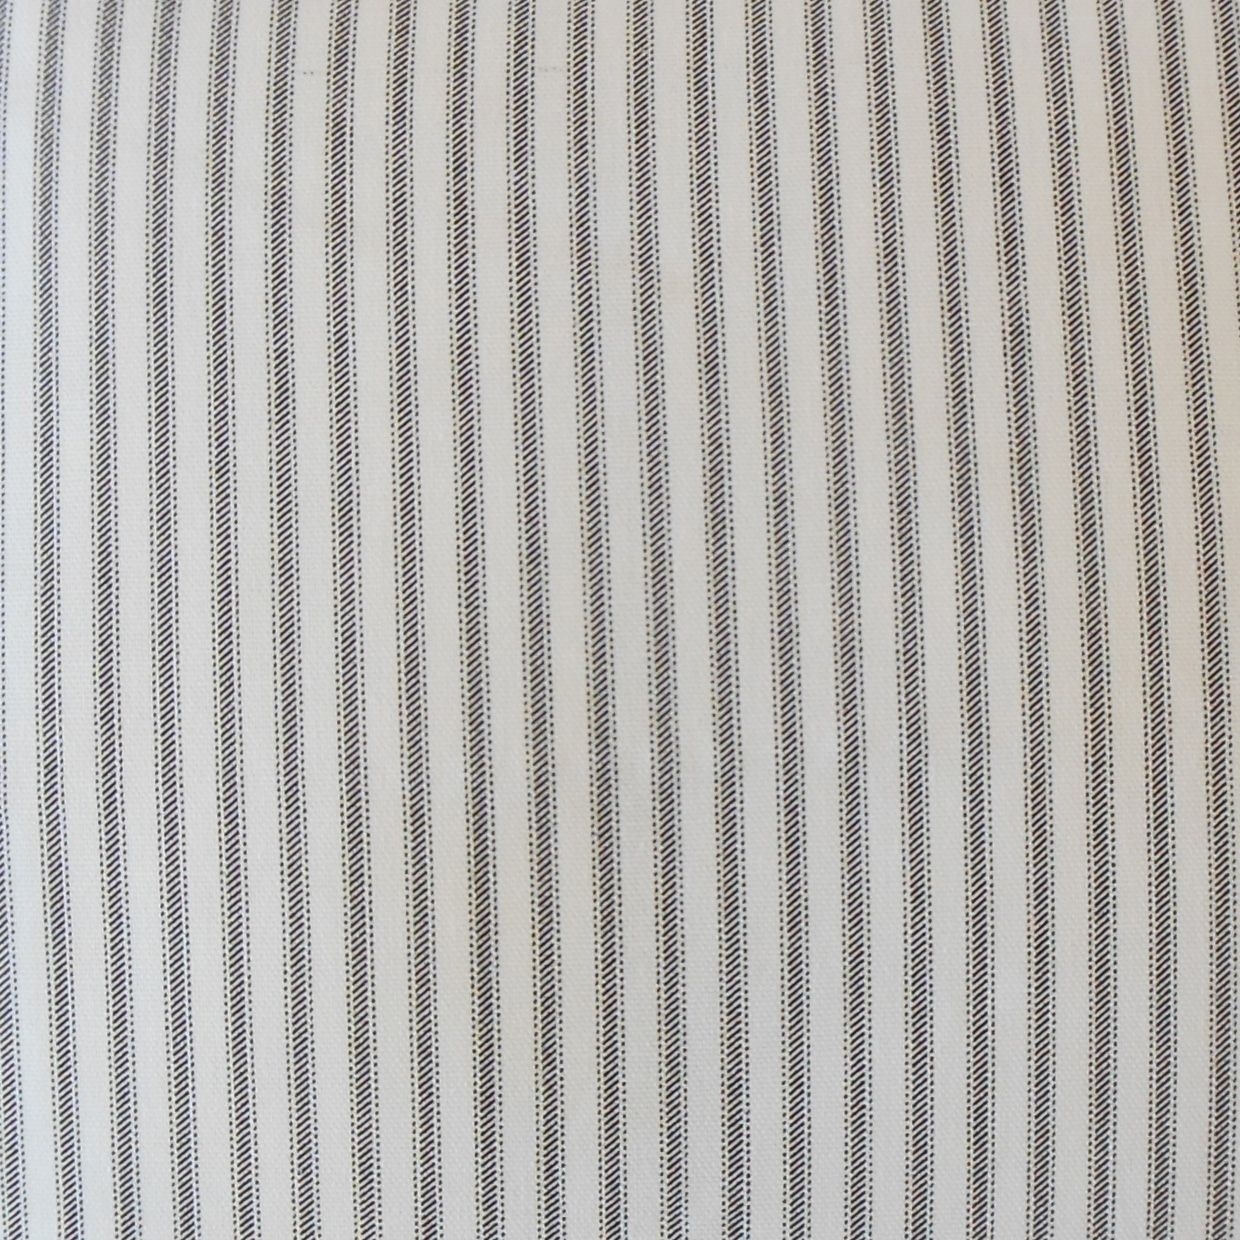 Ticking Stripe Lumbar Pillow, Black, 18" x 12" - Image 1